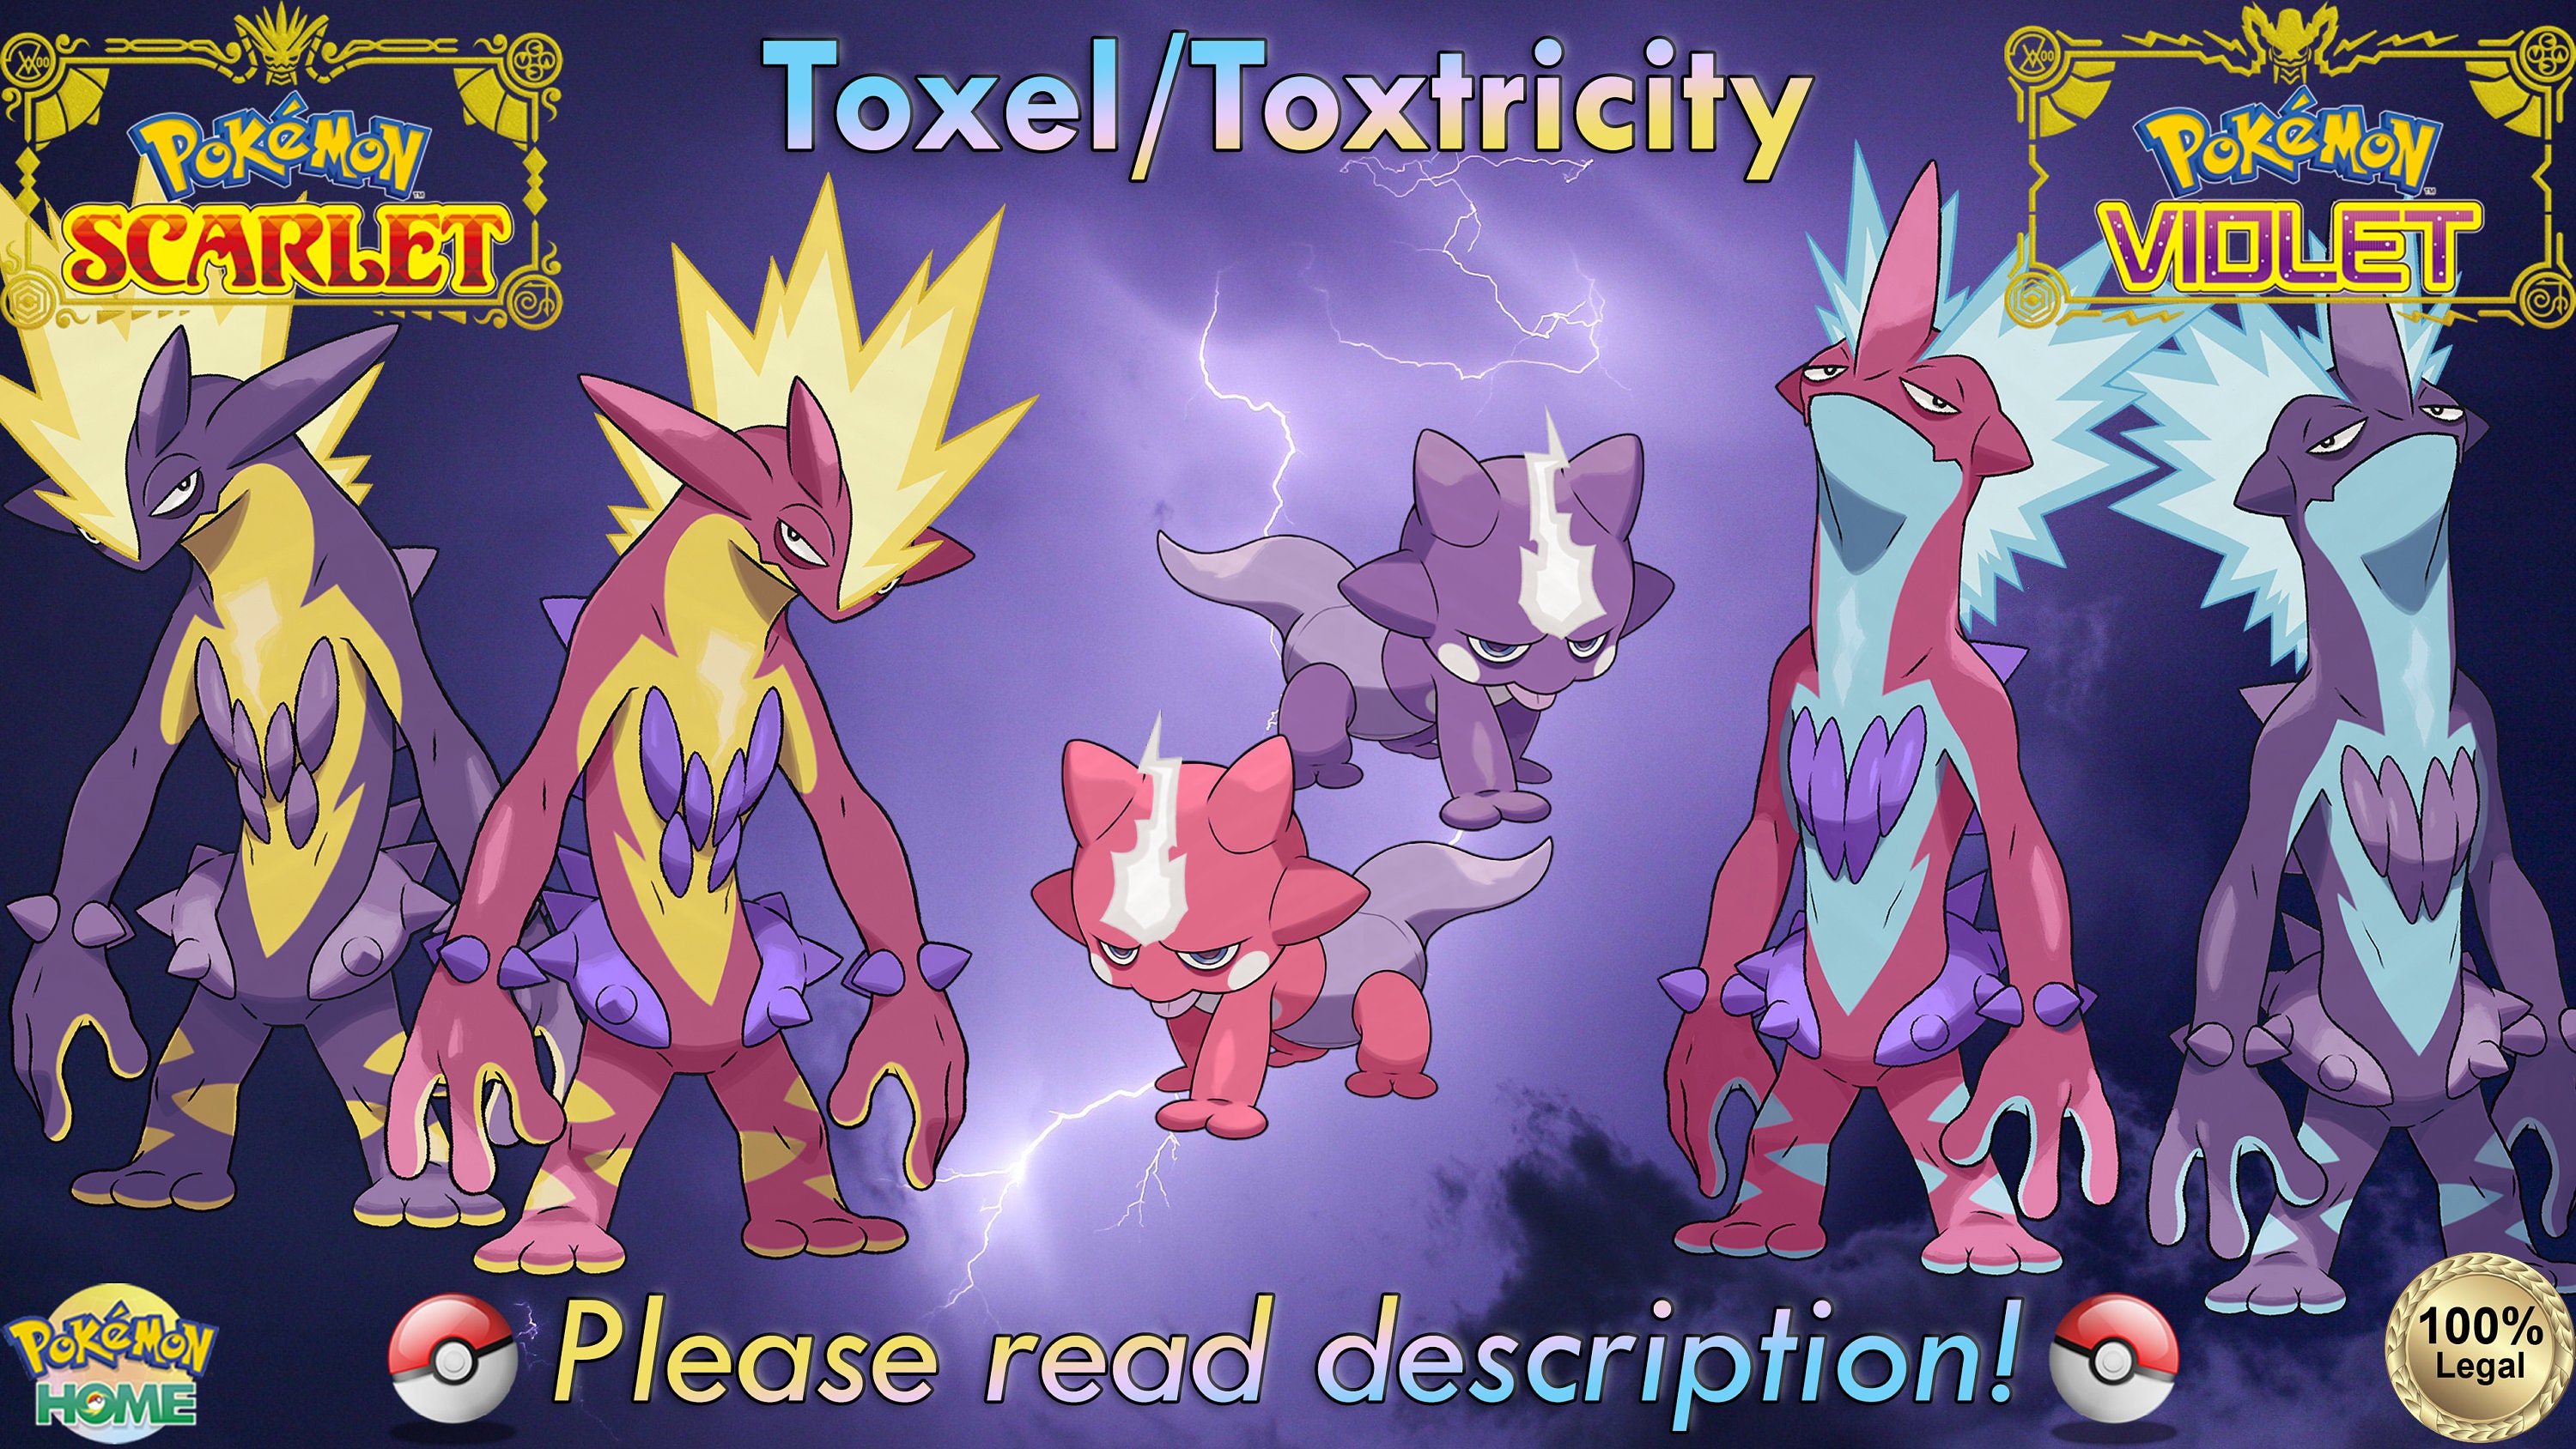 Shiny/non-shiny Toxel/toxtricity 6IV Pokémon Scarlet/violet 